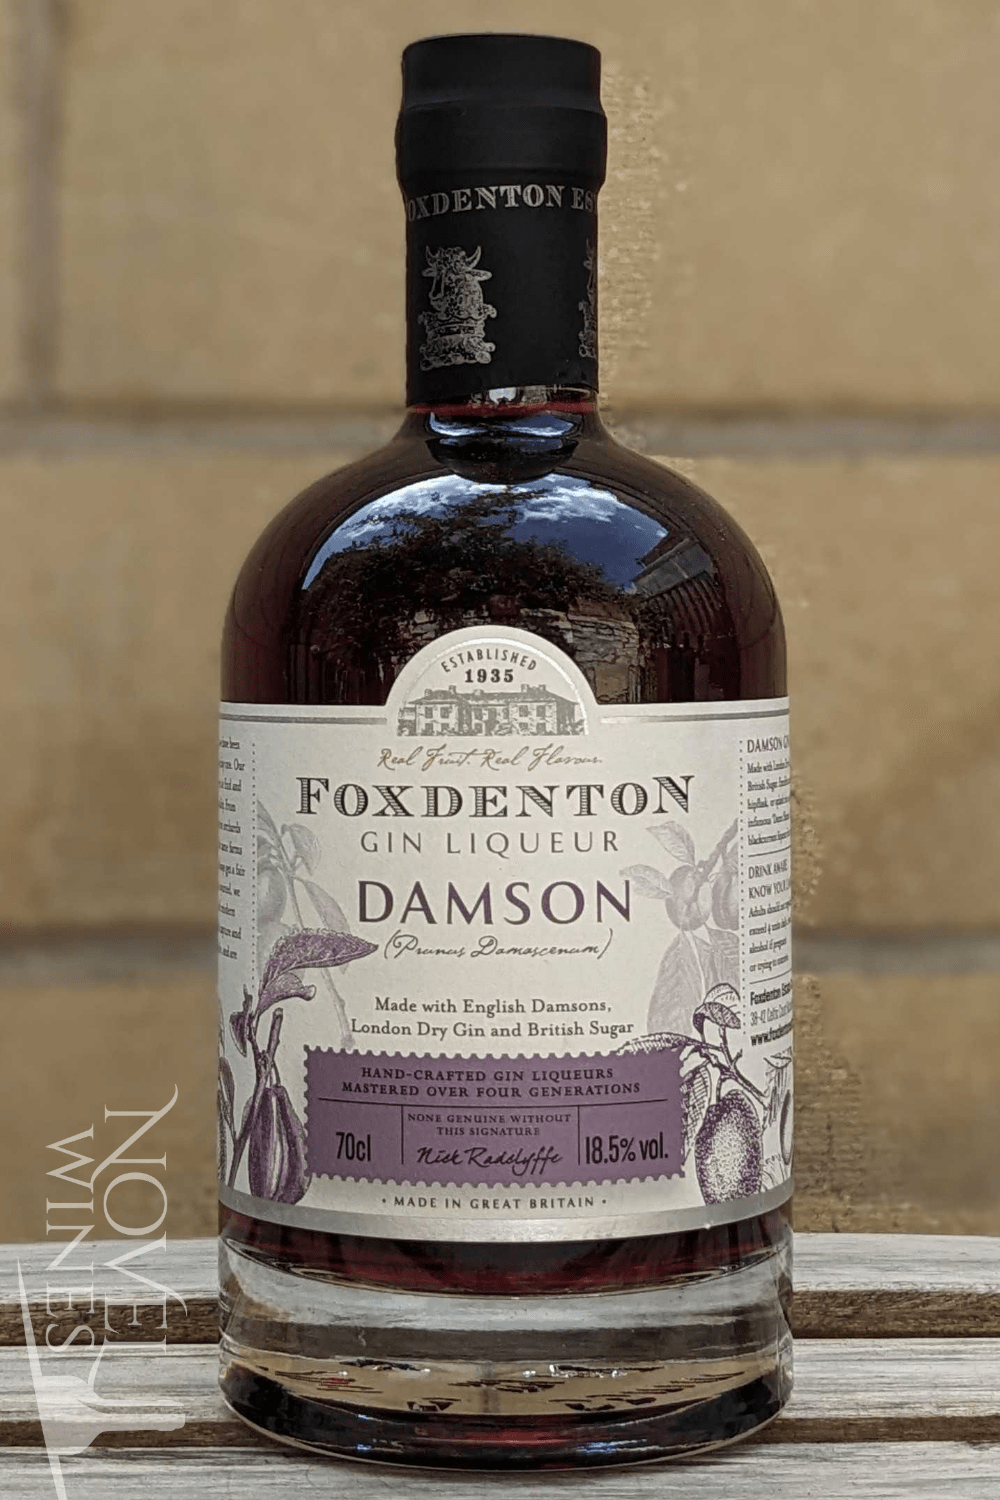 Foxdenton Estate Liqueur Foxdenton Damson Gin Liqueur 18.5% abv, England